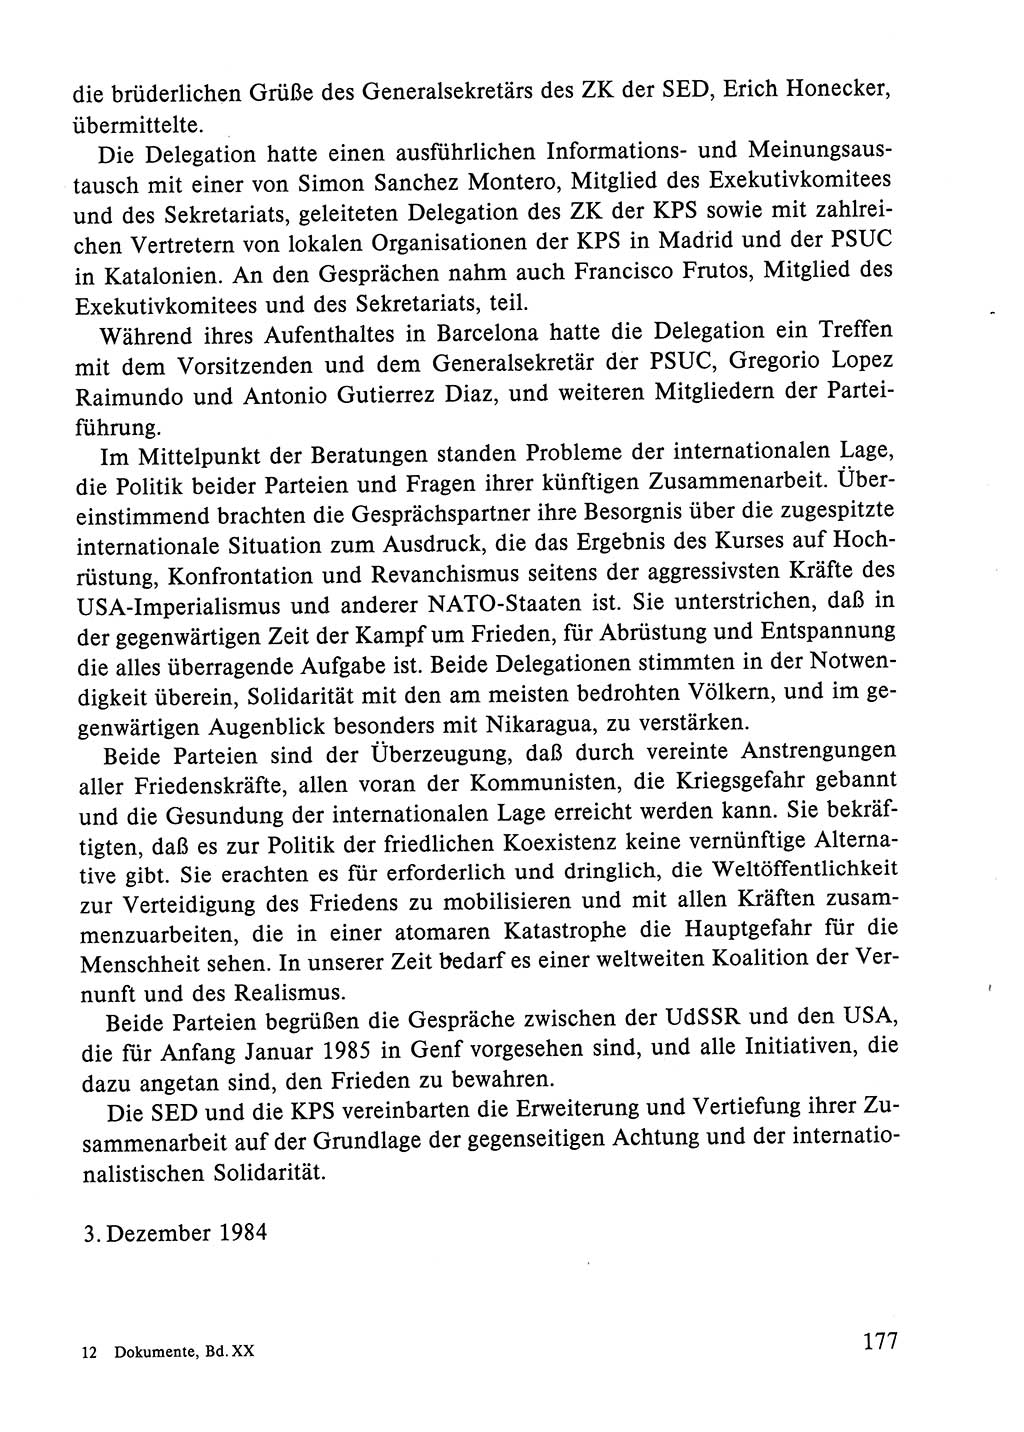 Dokumente der Sozialistischen Einheitspartei Deutschlands (SED) [Deutsche Demokratische Republik (DDR)] 1984-1985, Seite 250 (Dok. SED DDR 1984-1985, S. 250)